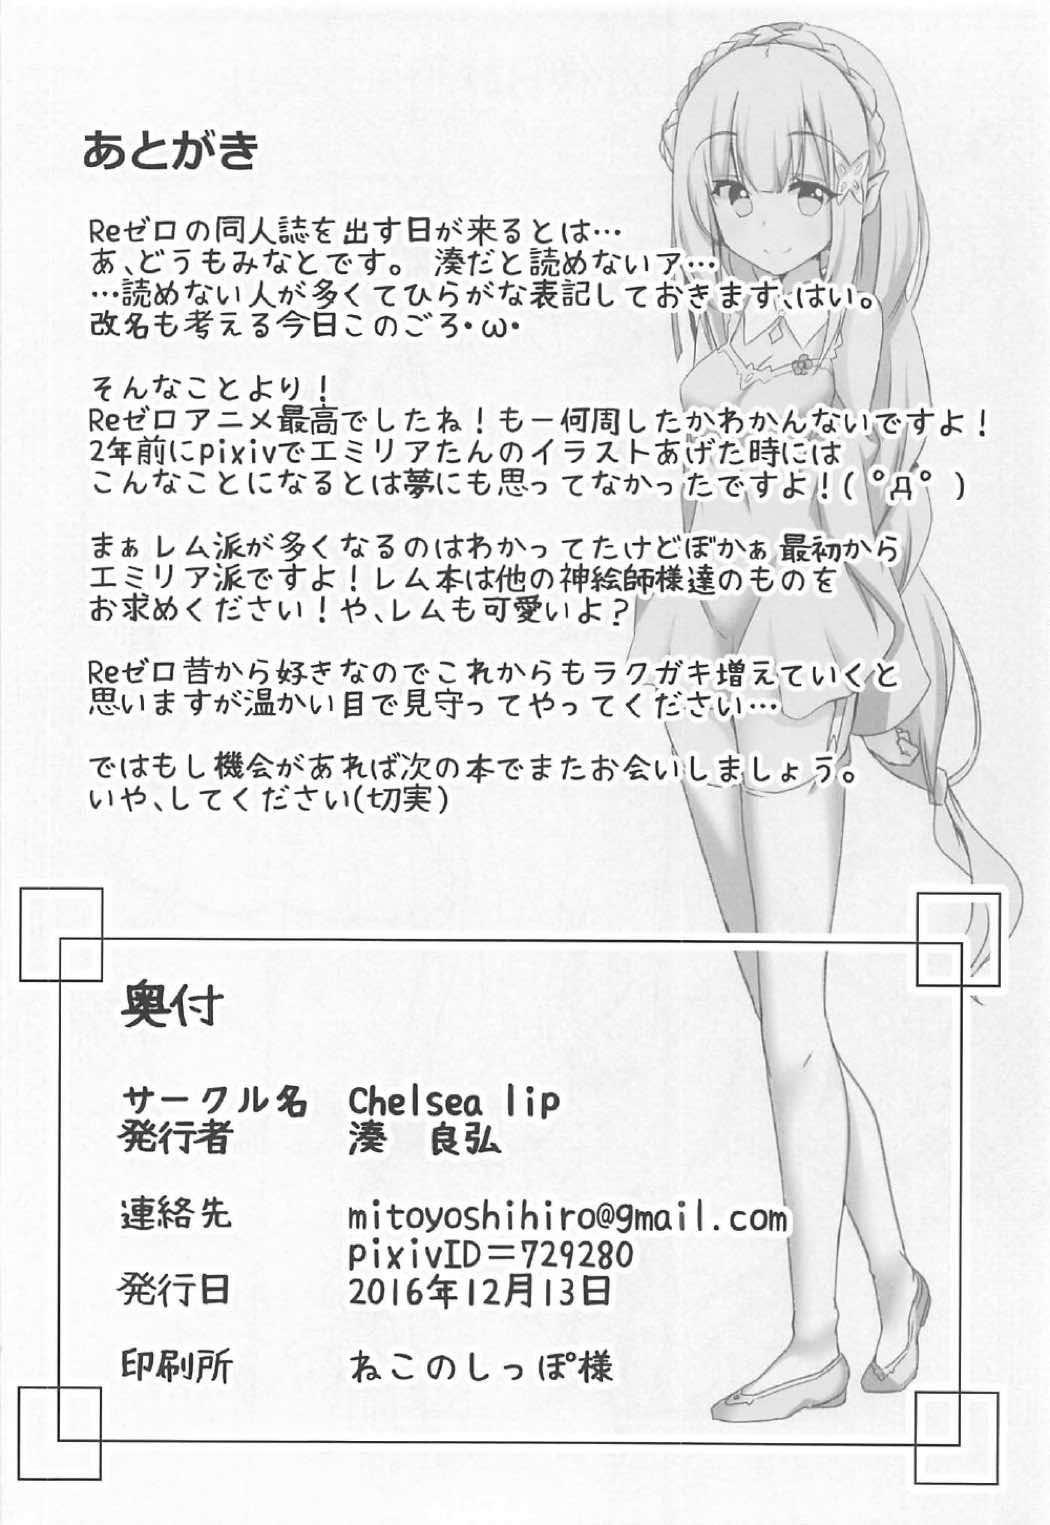 Cornudo Uchi no Heroine Chouzetsu Choroin - Re zero kara hajimeru isekai seikatsu Free - Page 21